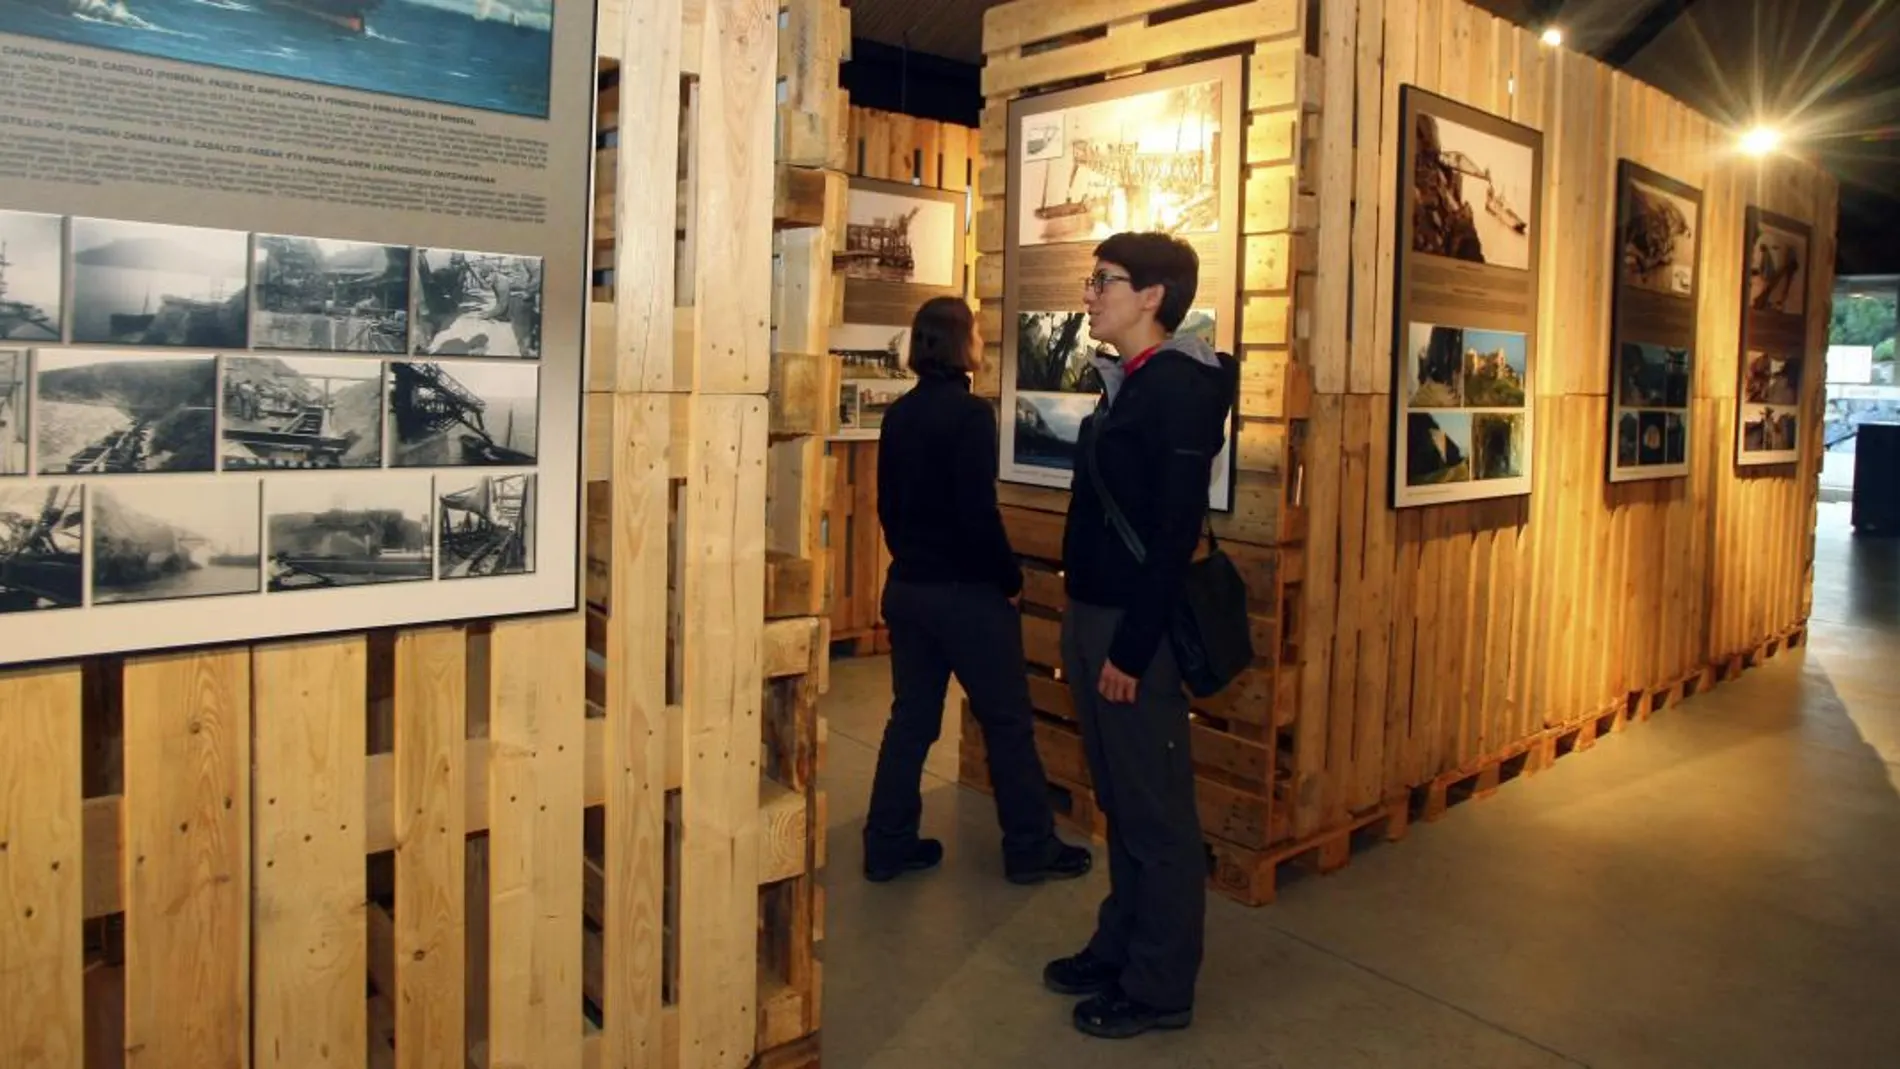 Dos turistas visitan el Museo Nacional de la Energía, situado en el municipio leonés de Ponferrada